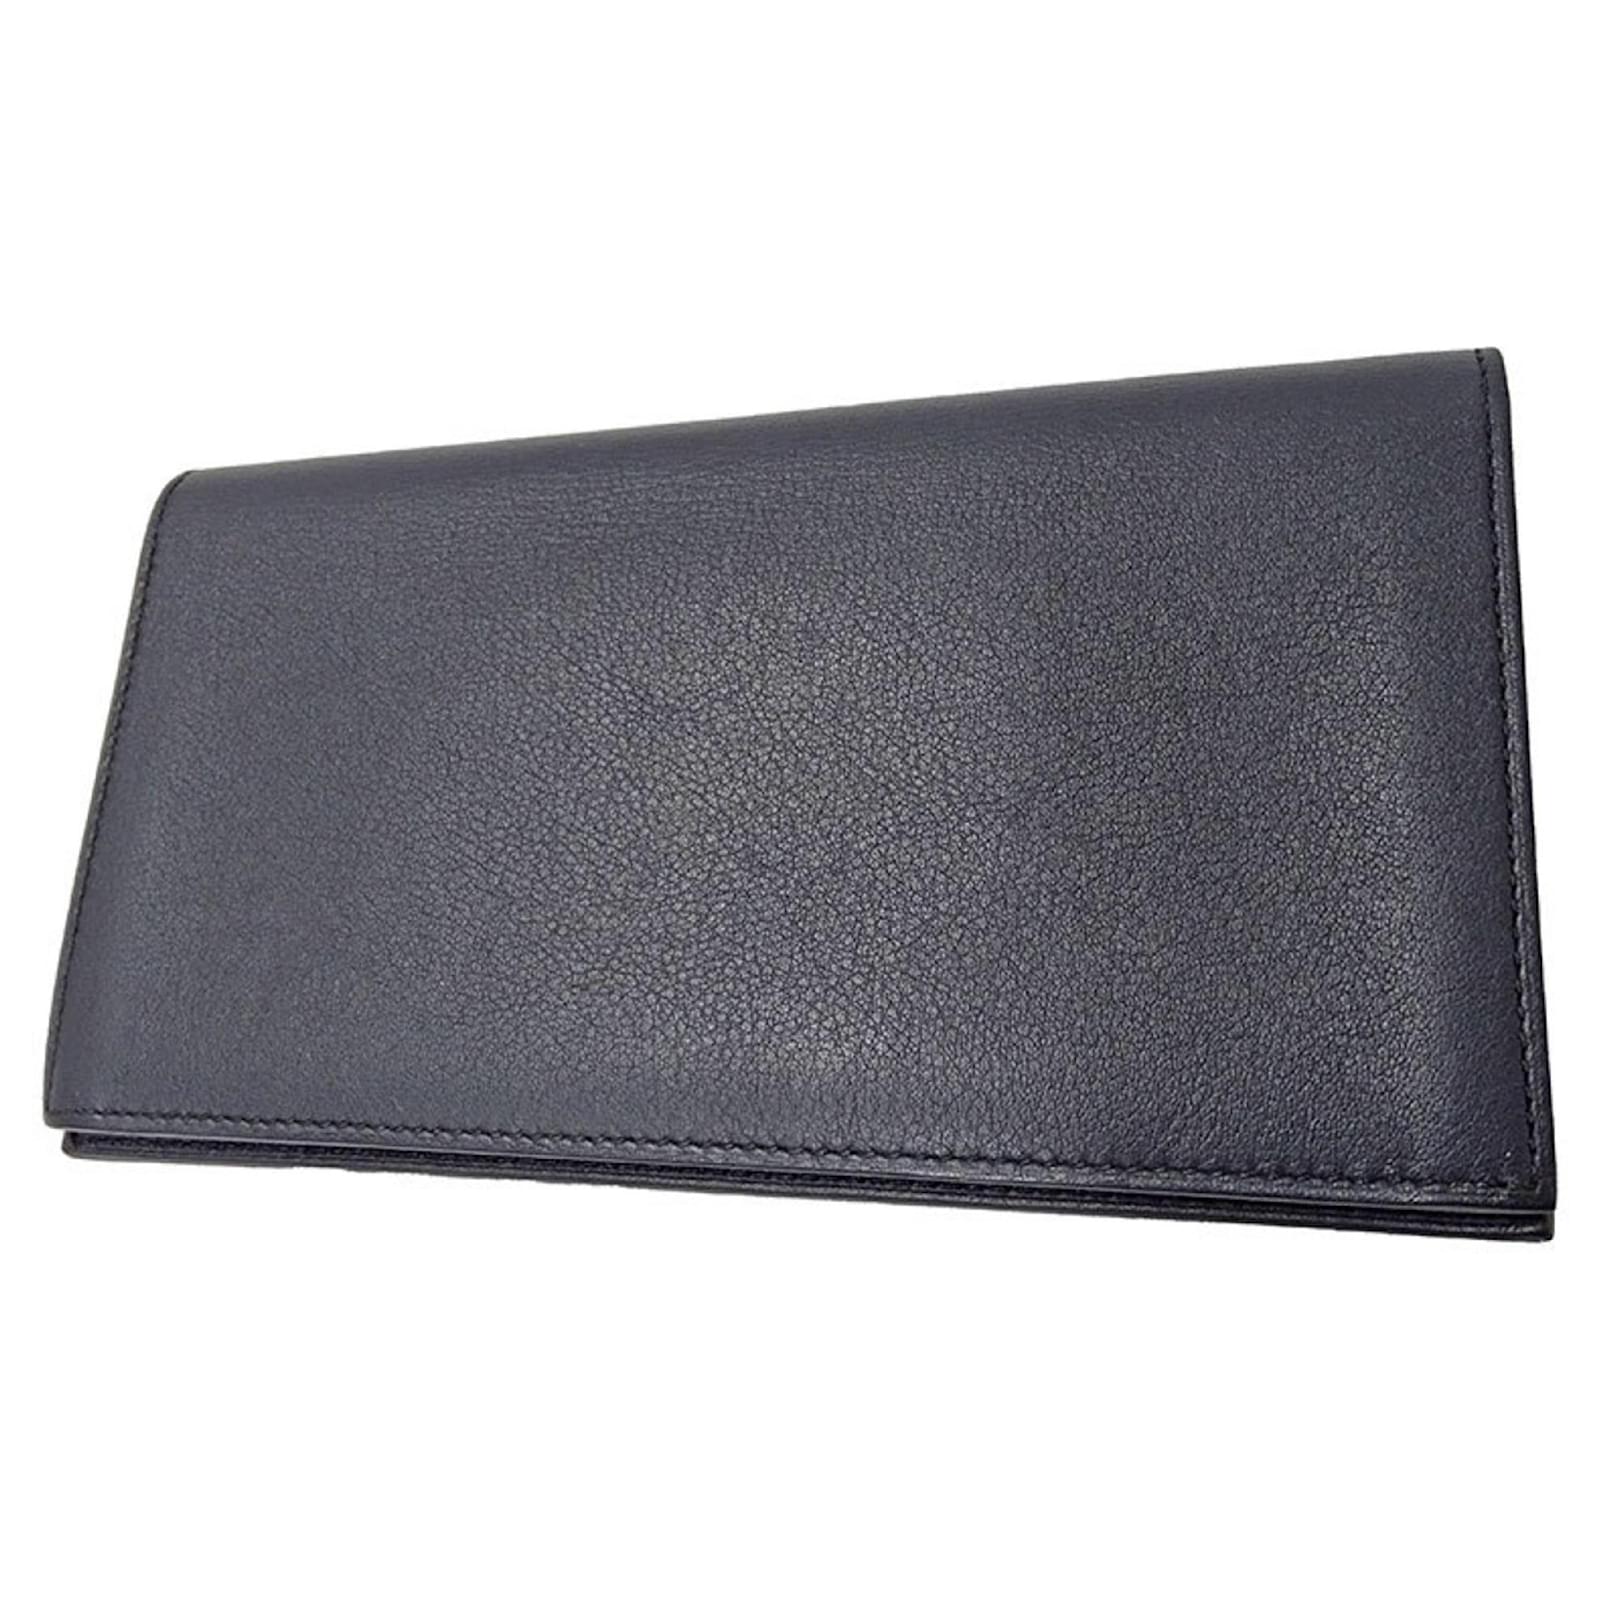 Hermès Citizen Twill Card Holder - Black Wallets, Accessories